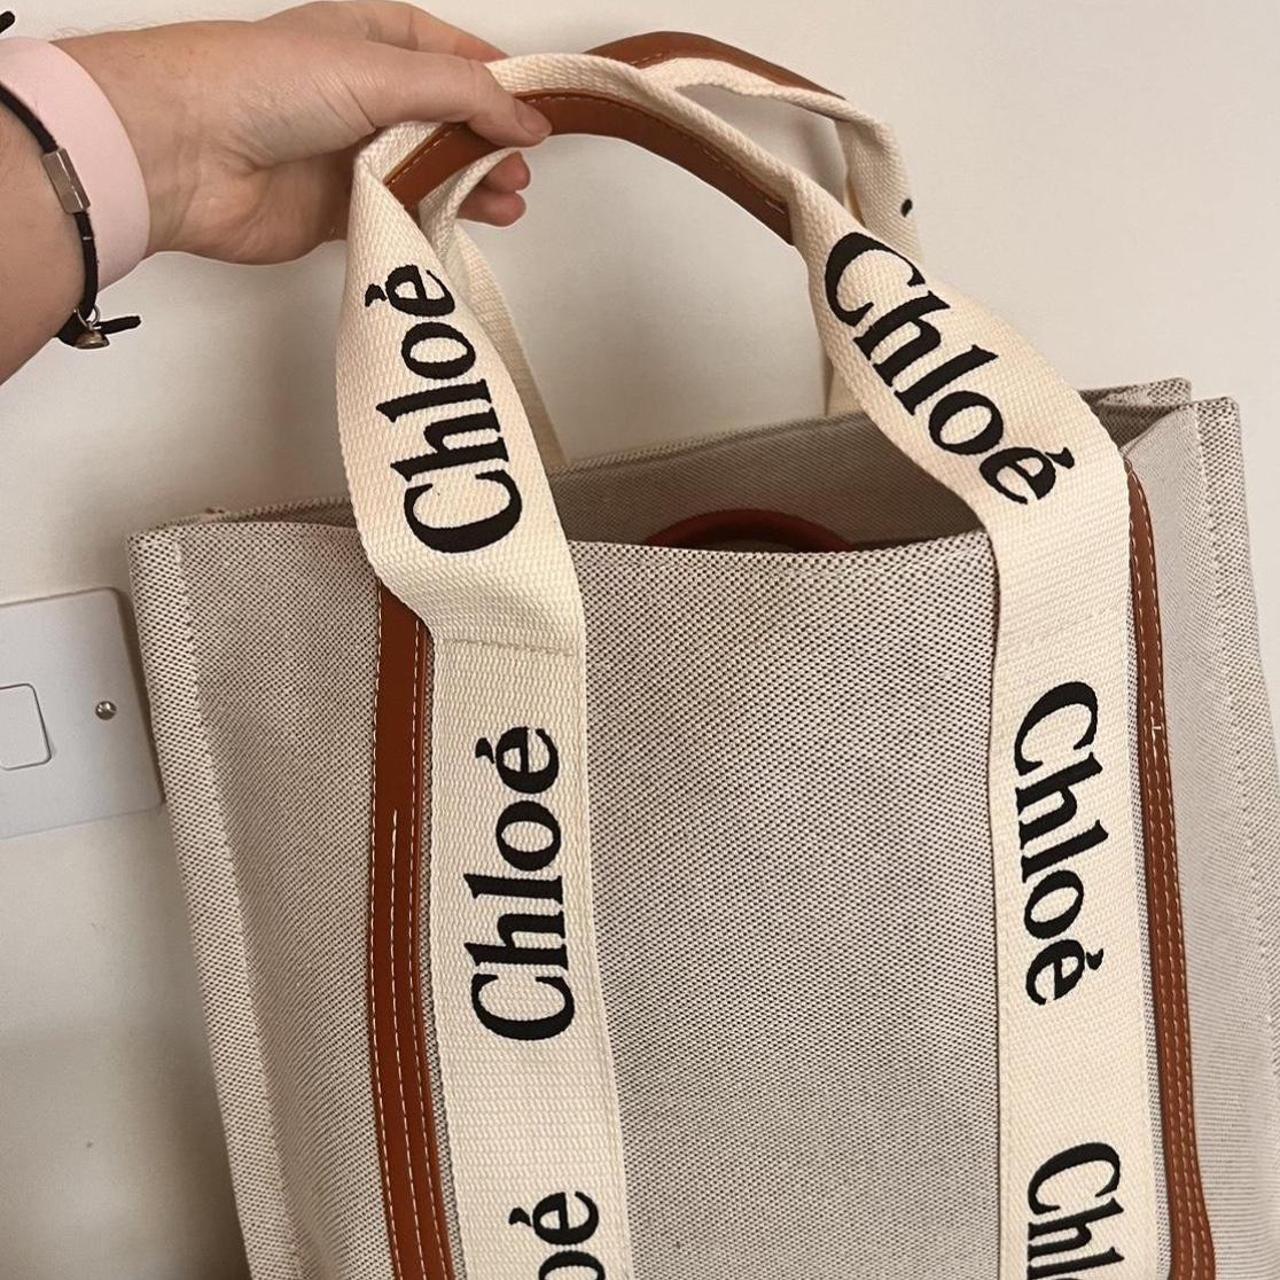 Chloe inspired large tote bag. #totebag #bag #chooe - Depop